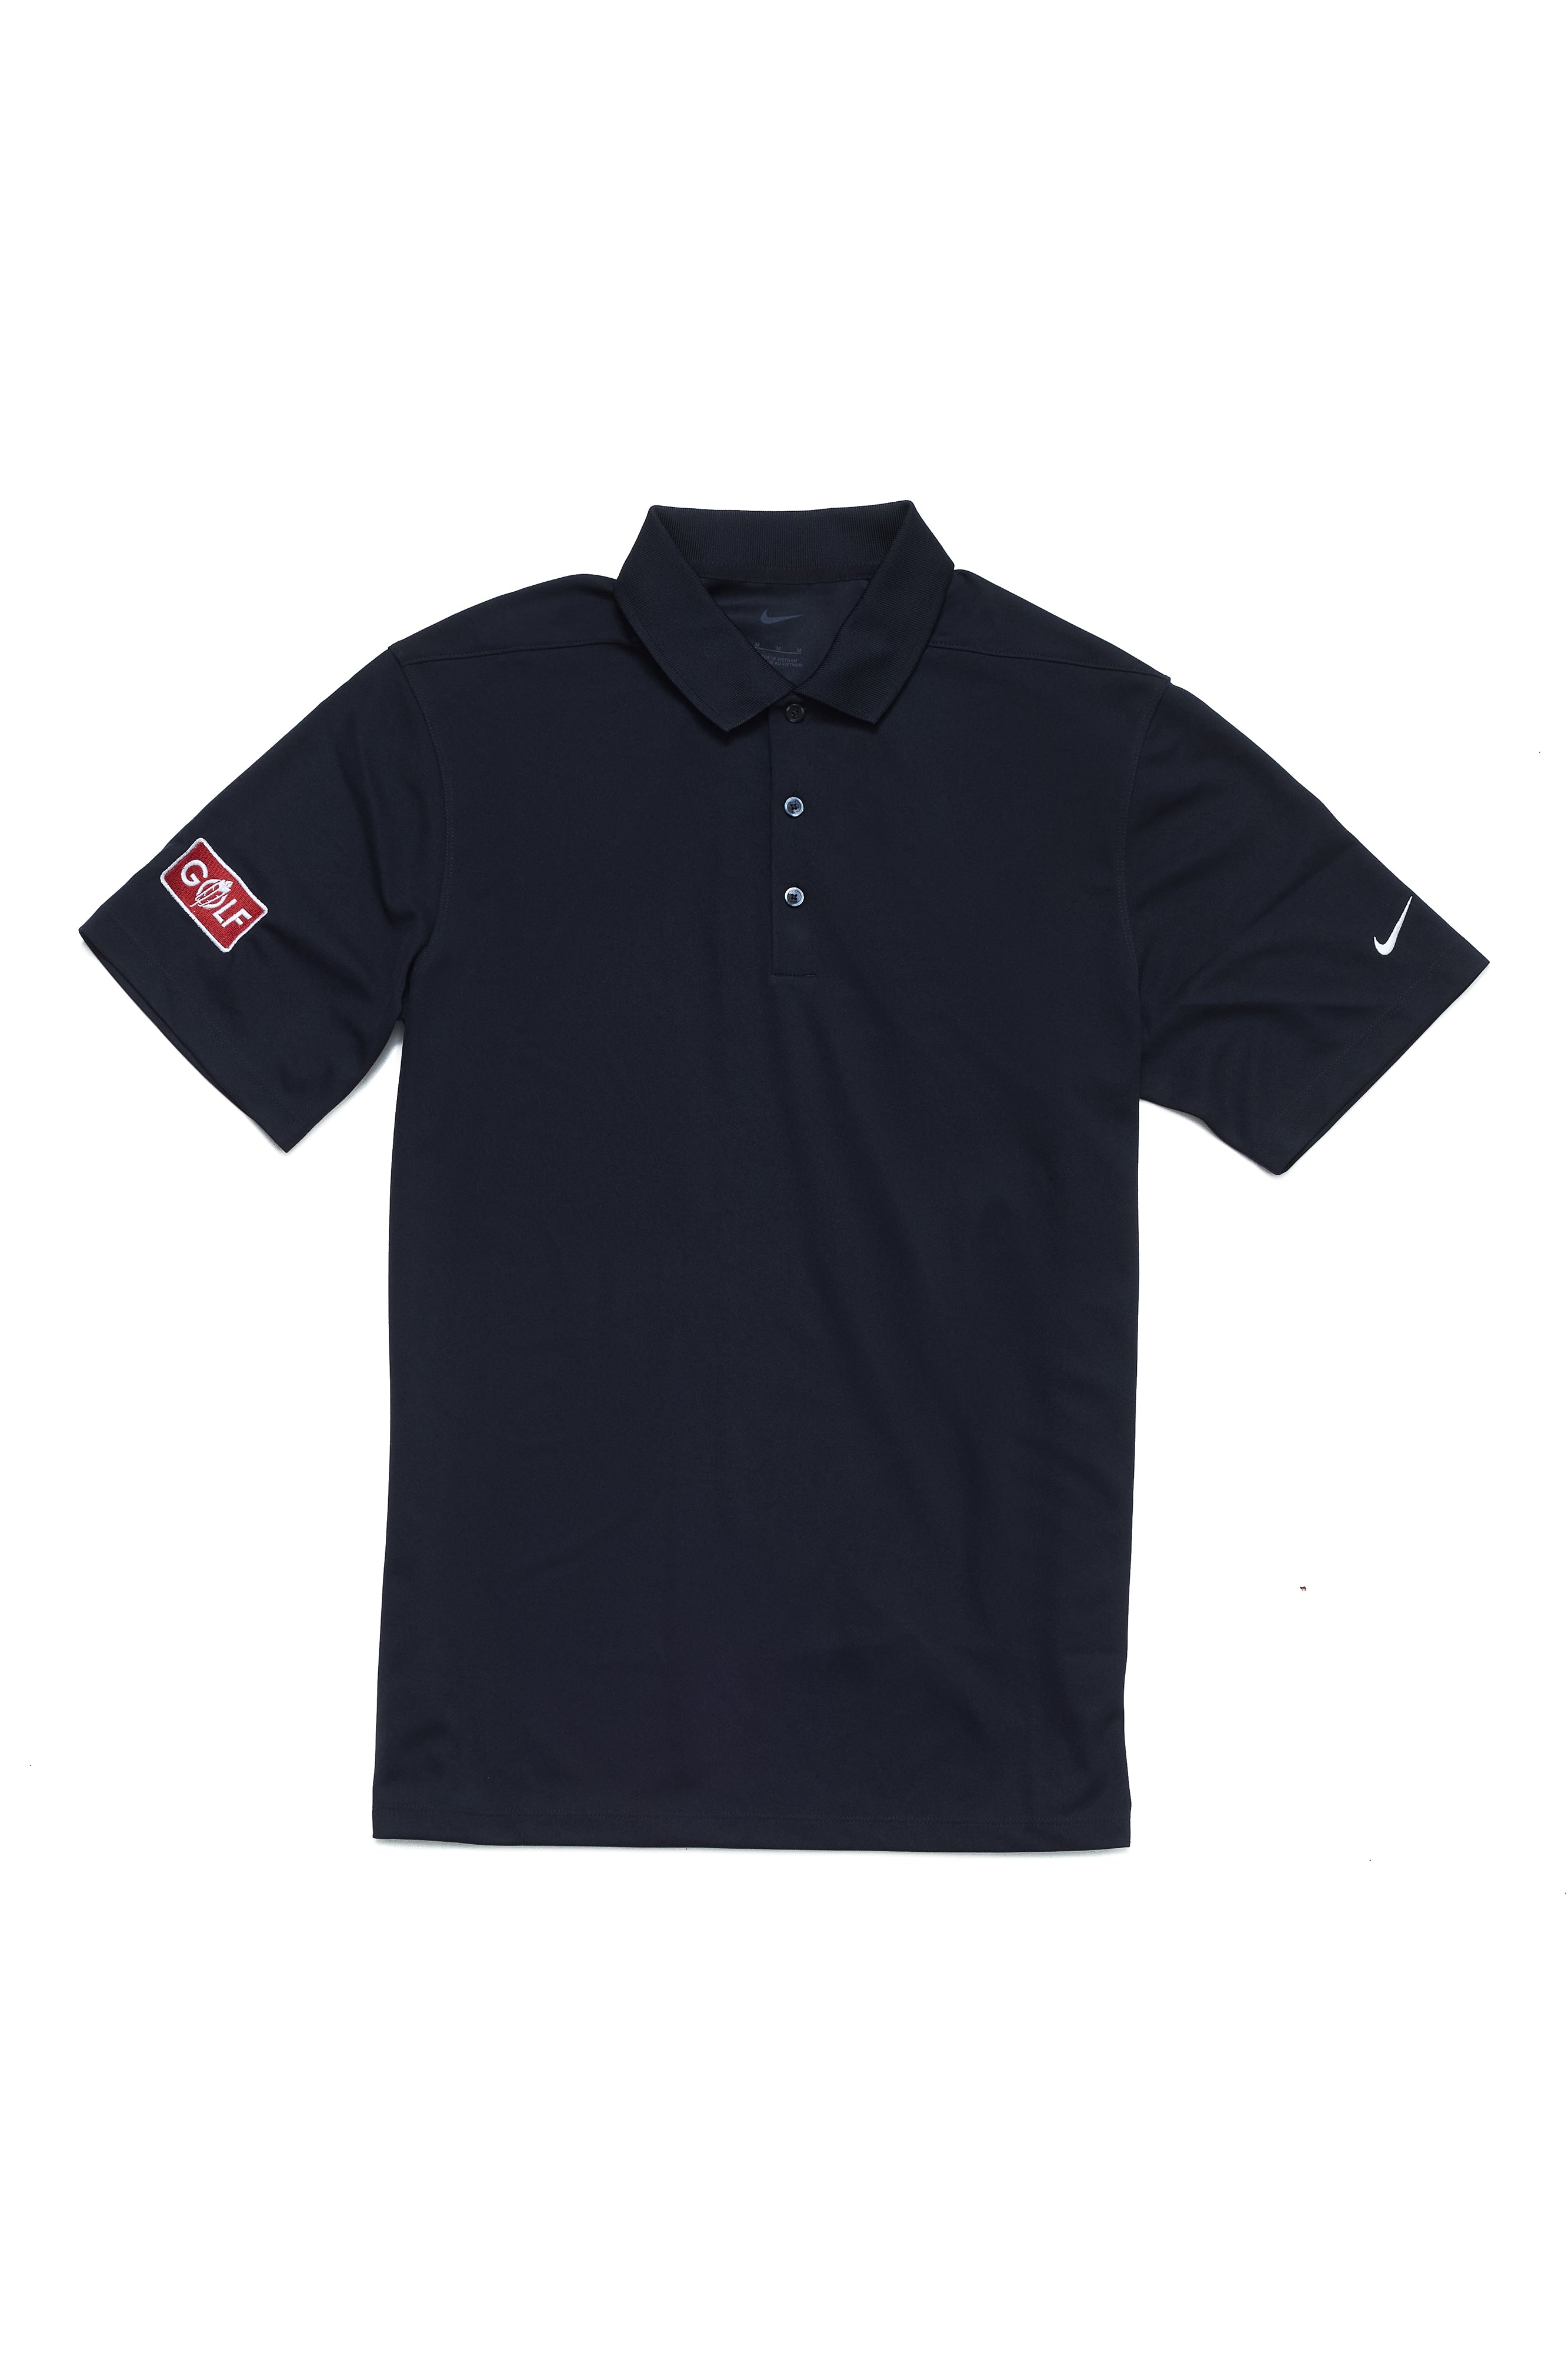 BHGC Golf Polo Shirt - Black